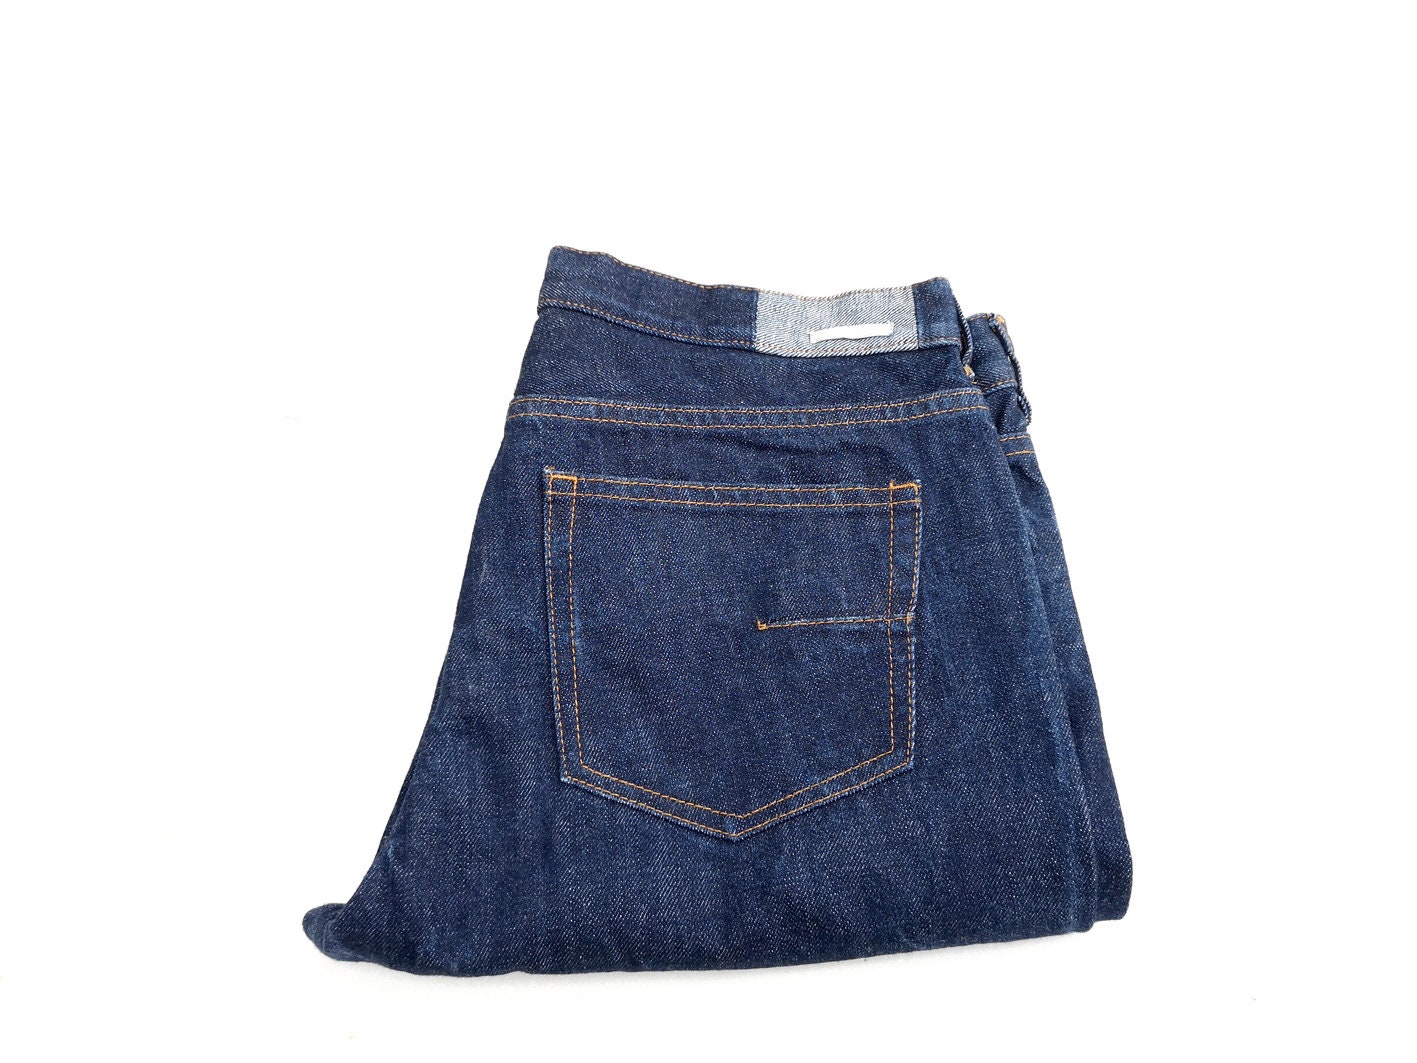 M.grifoni Slim Tapered Jeans Herren Größe 32 - Indigo Blue Denim Y2K Streetwear von PiccobelloVintage